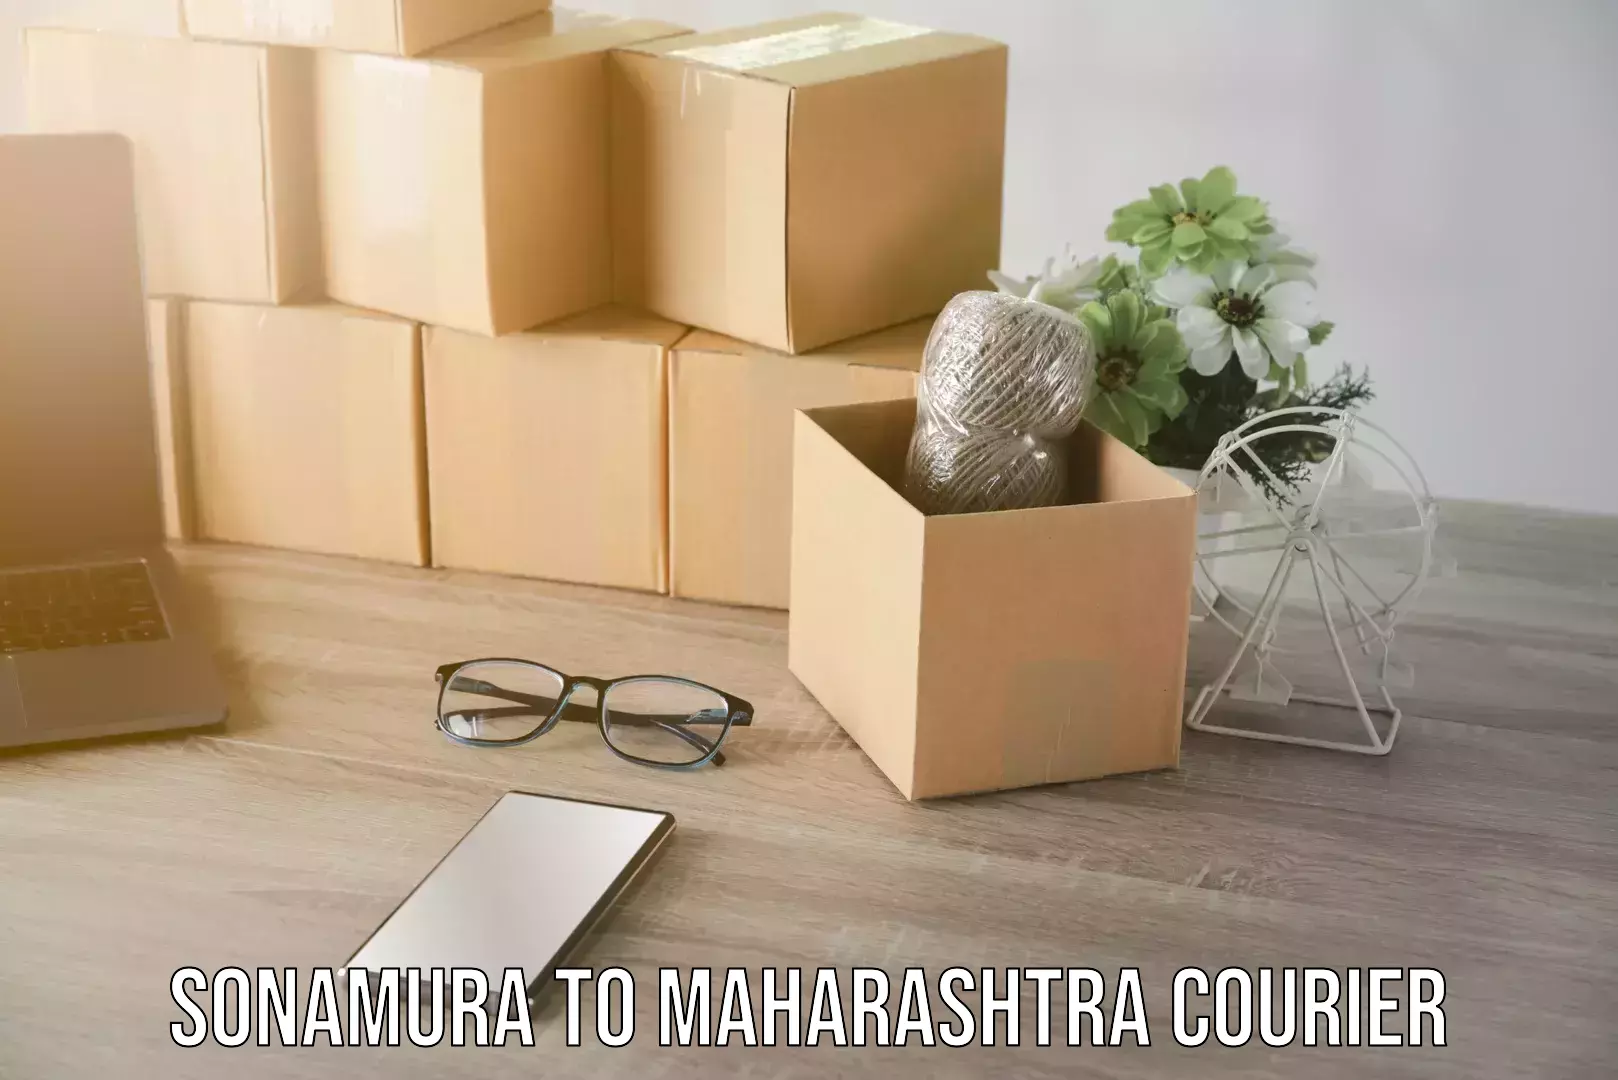 Courier service partnerships Sonamura to Maharashtra